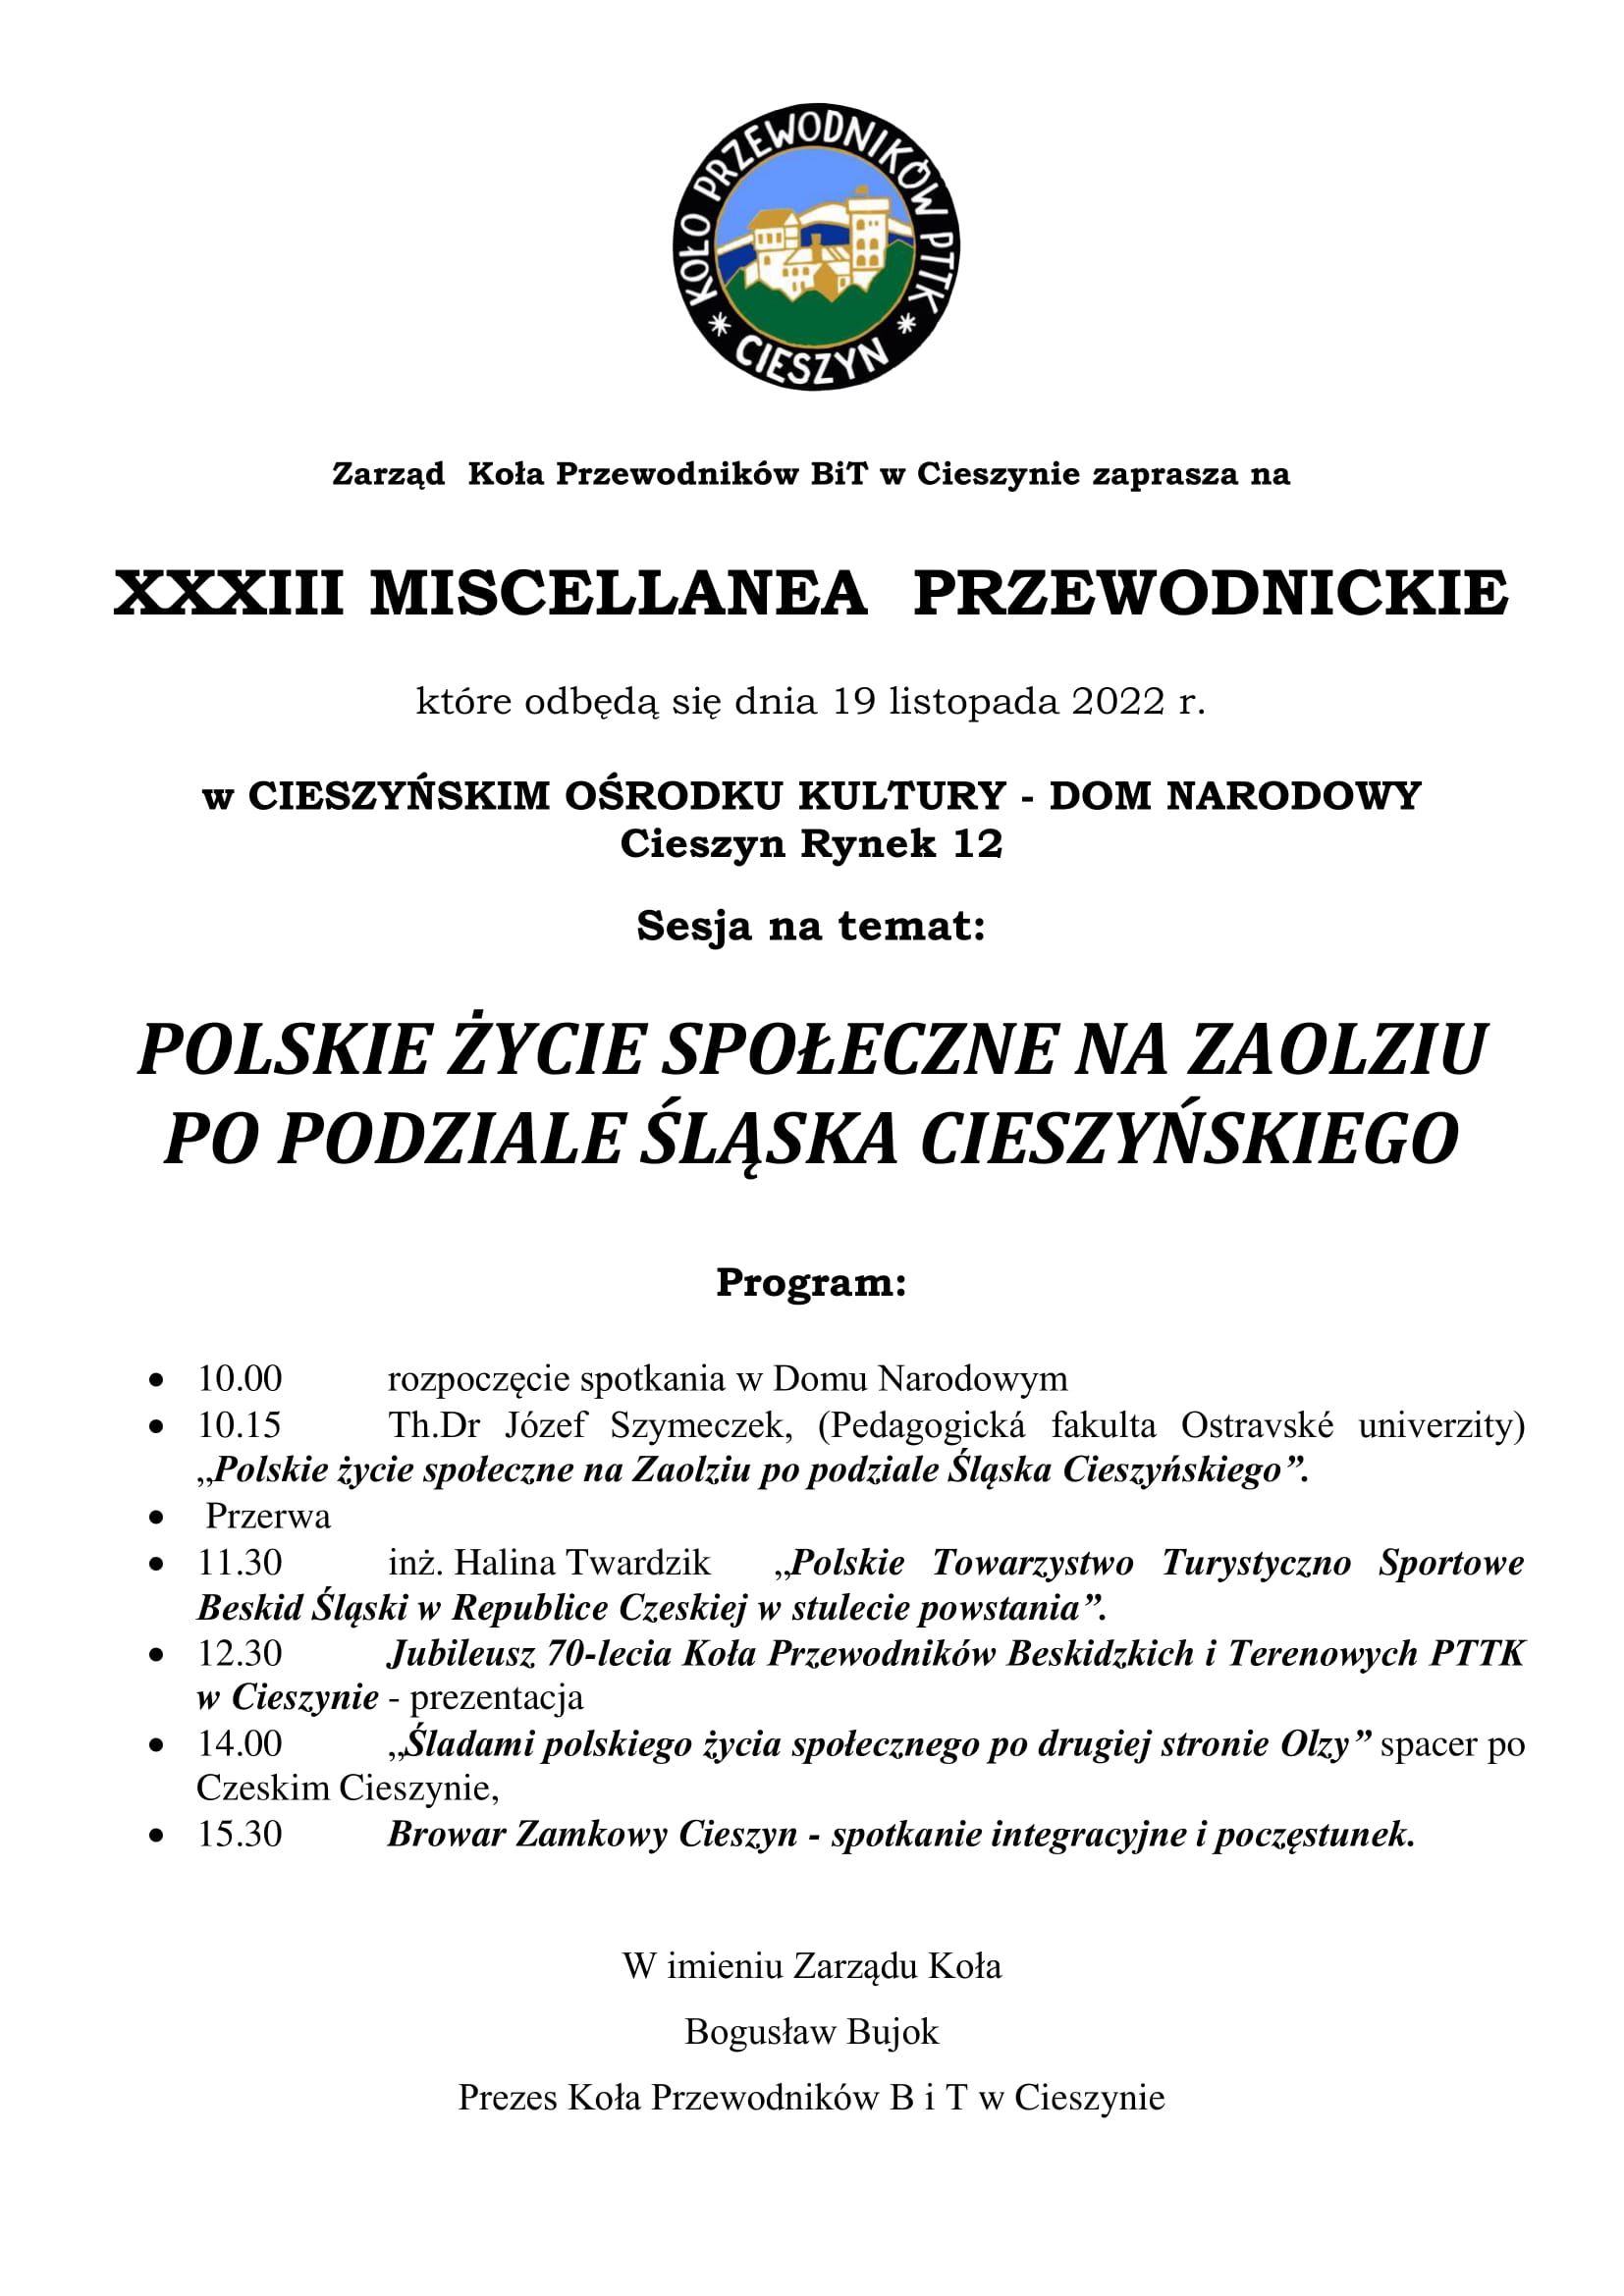 XXXIII Miscellanea Przewodnickiego w Cieszynie